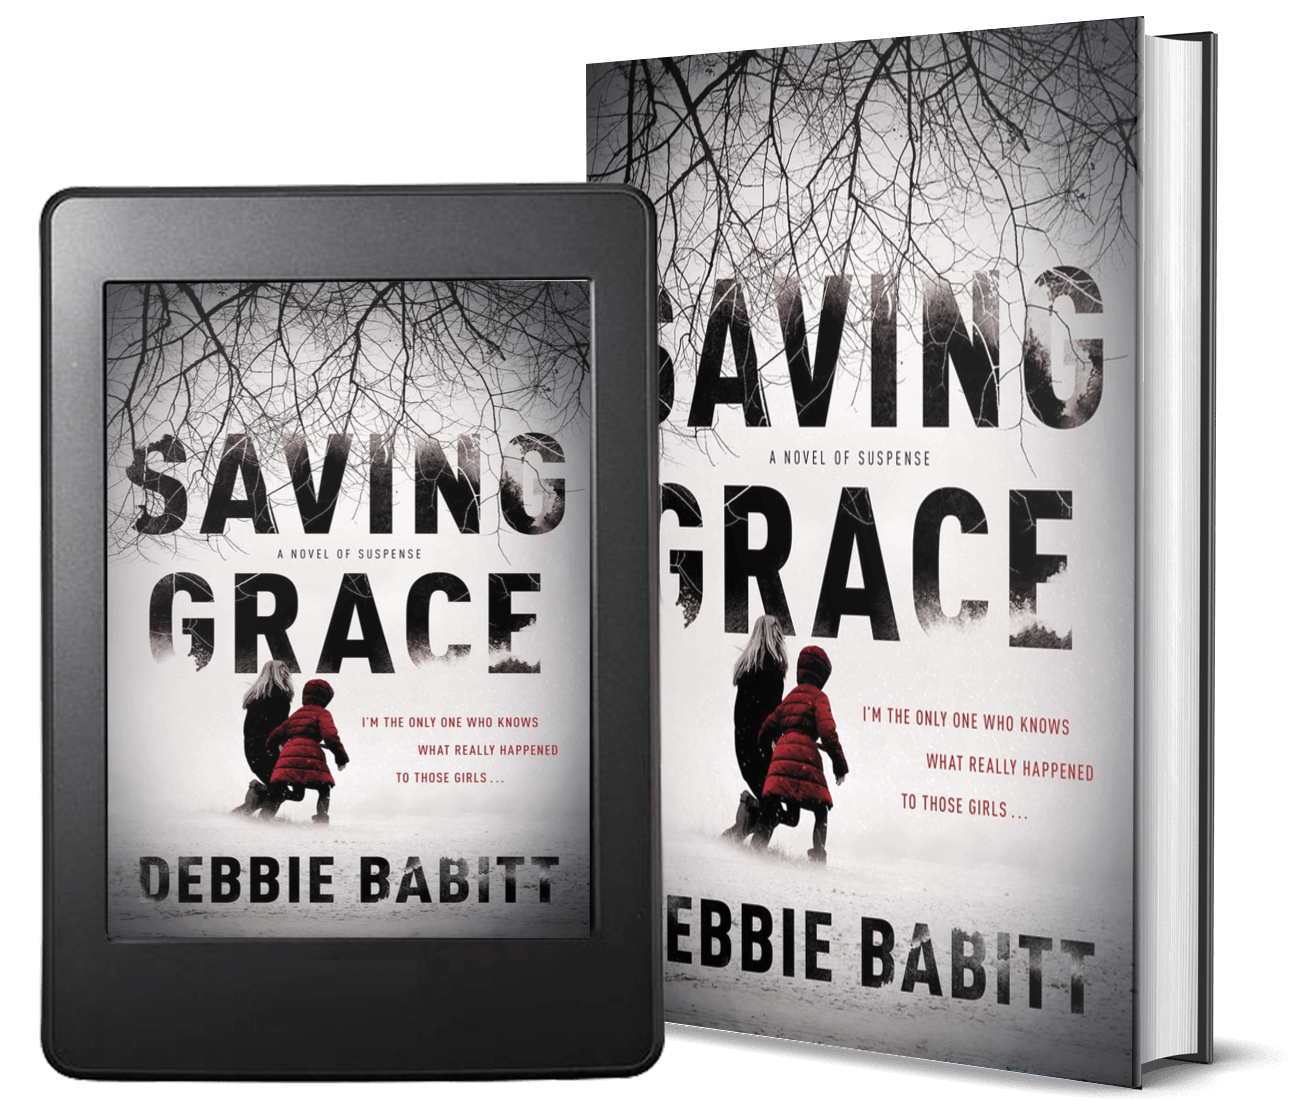 Saving Grace by Debbie Babitt